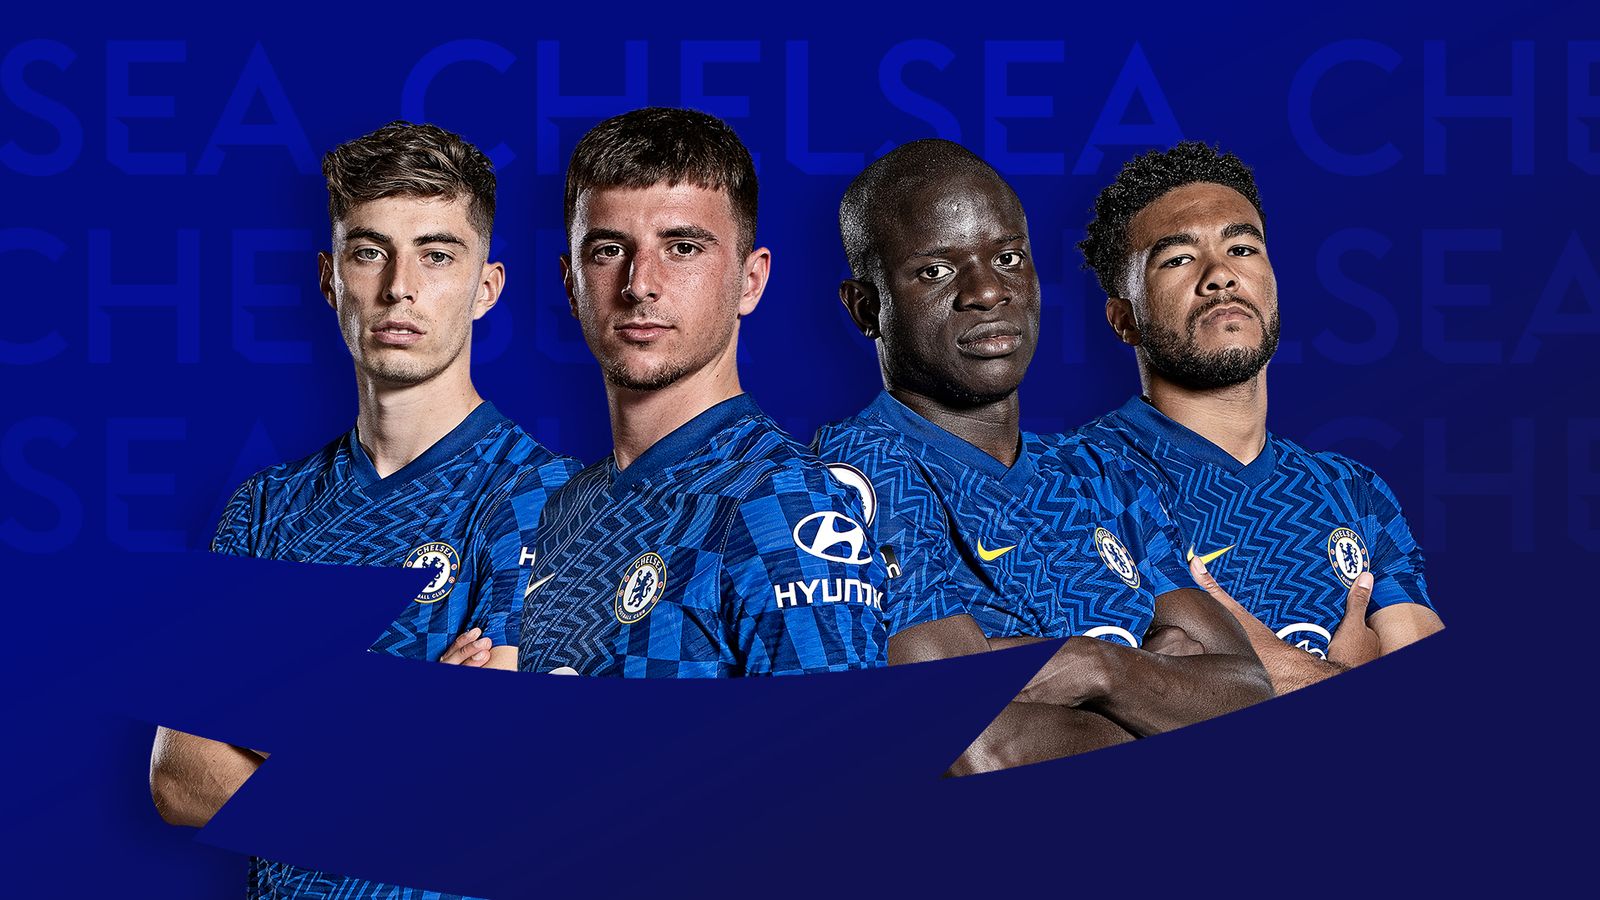 Chelsea: Premier League 2022/23 fixtures and schedule